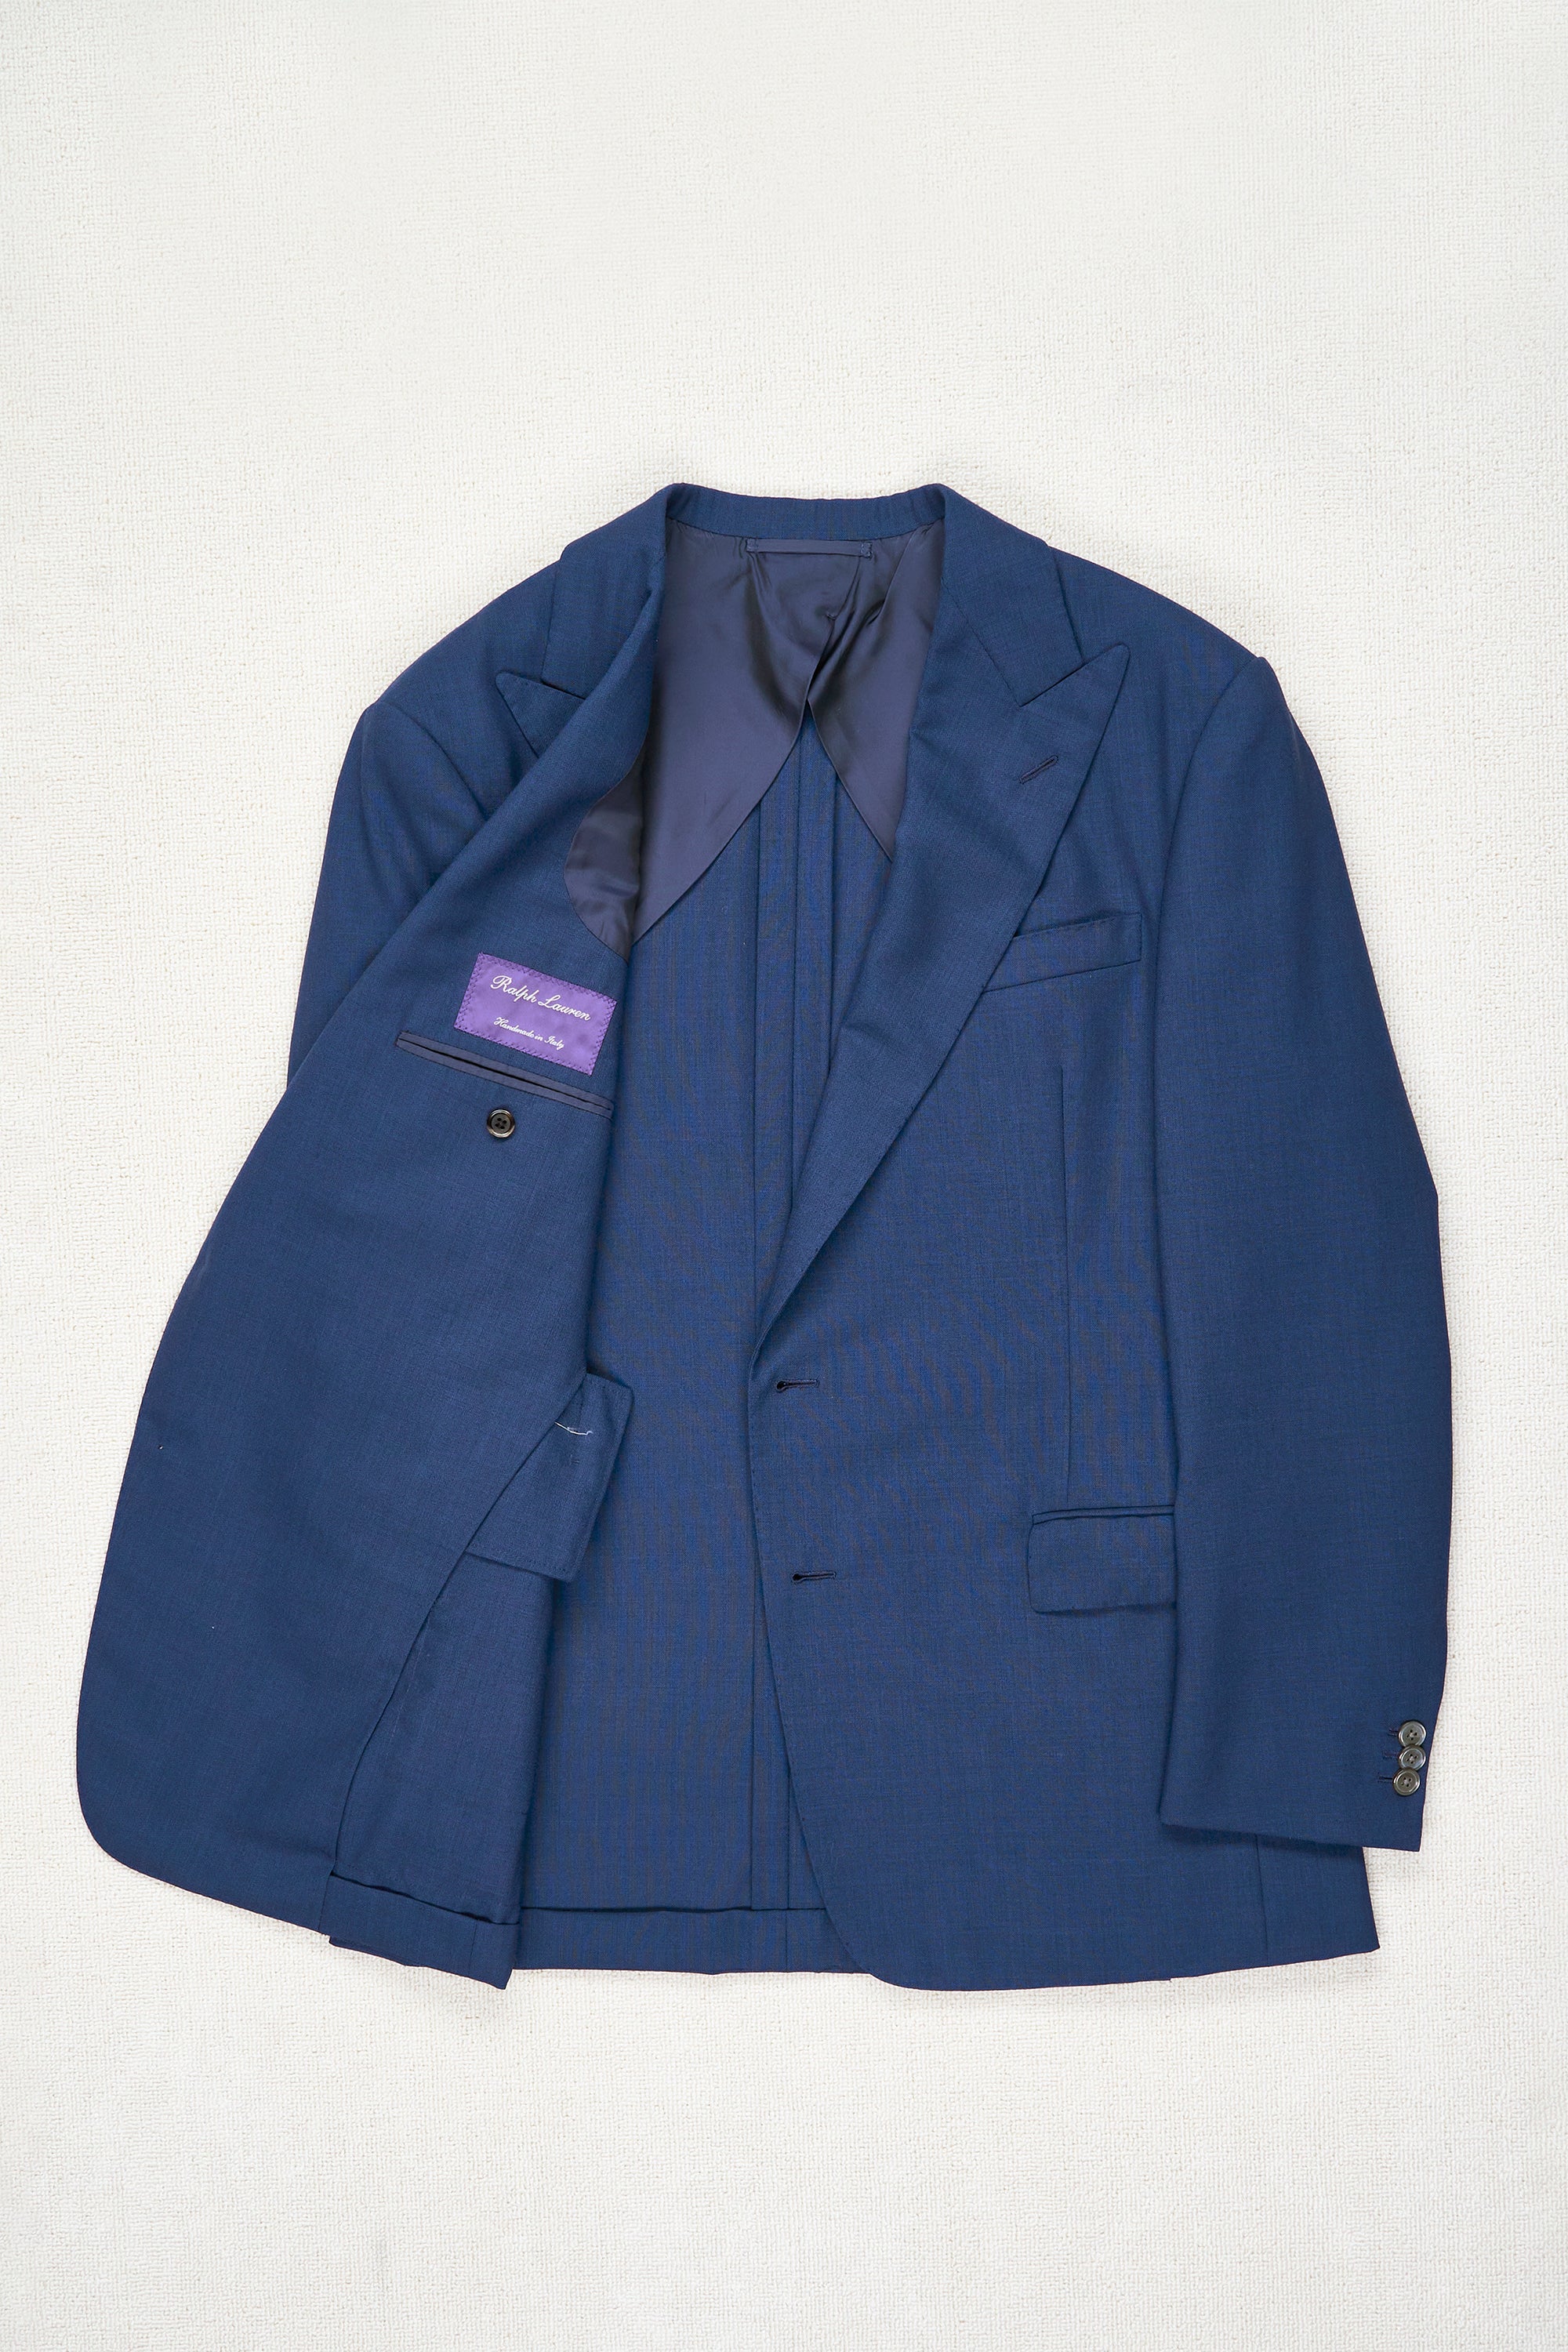 Ralph Lauren Purple Label Blue Wool Sport Coat MTM